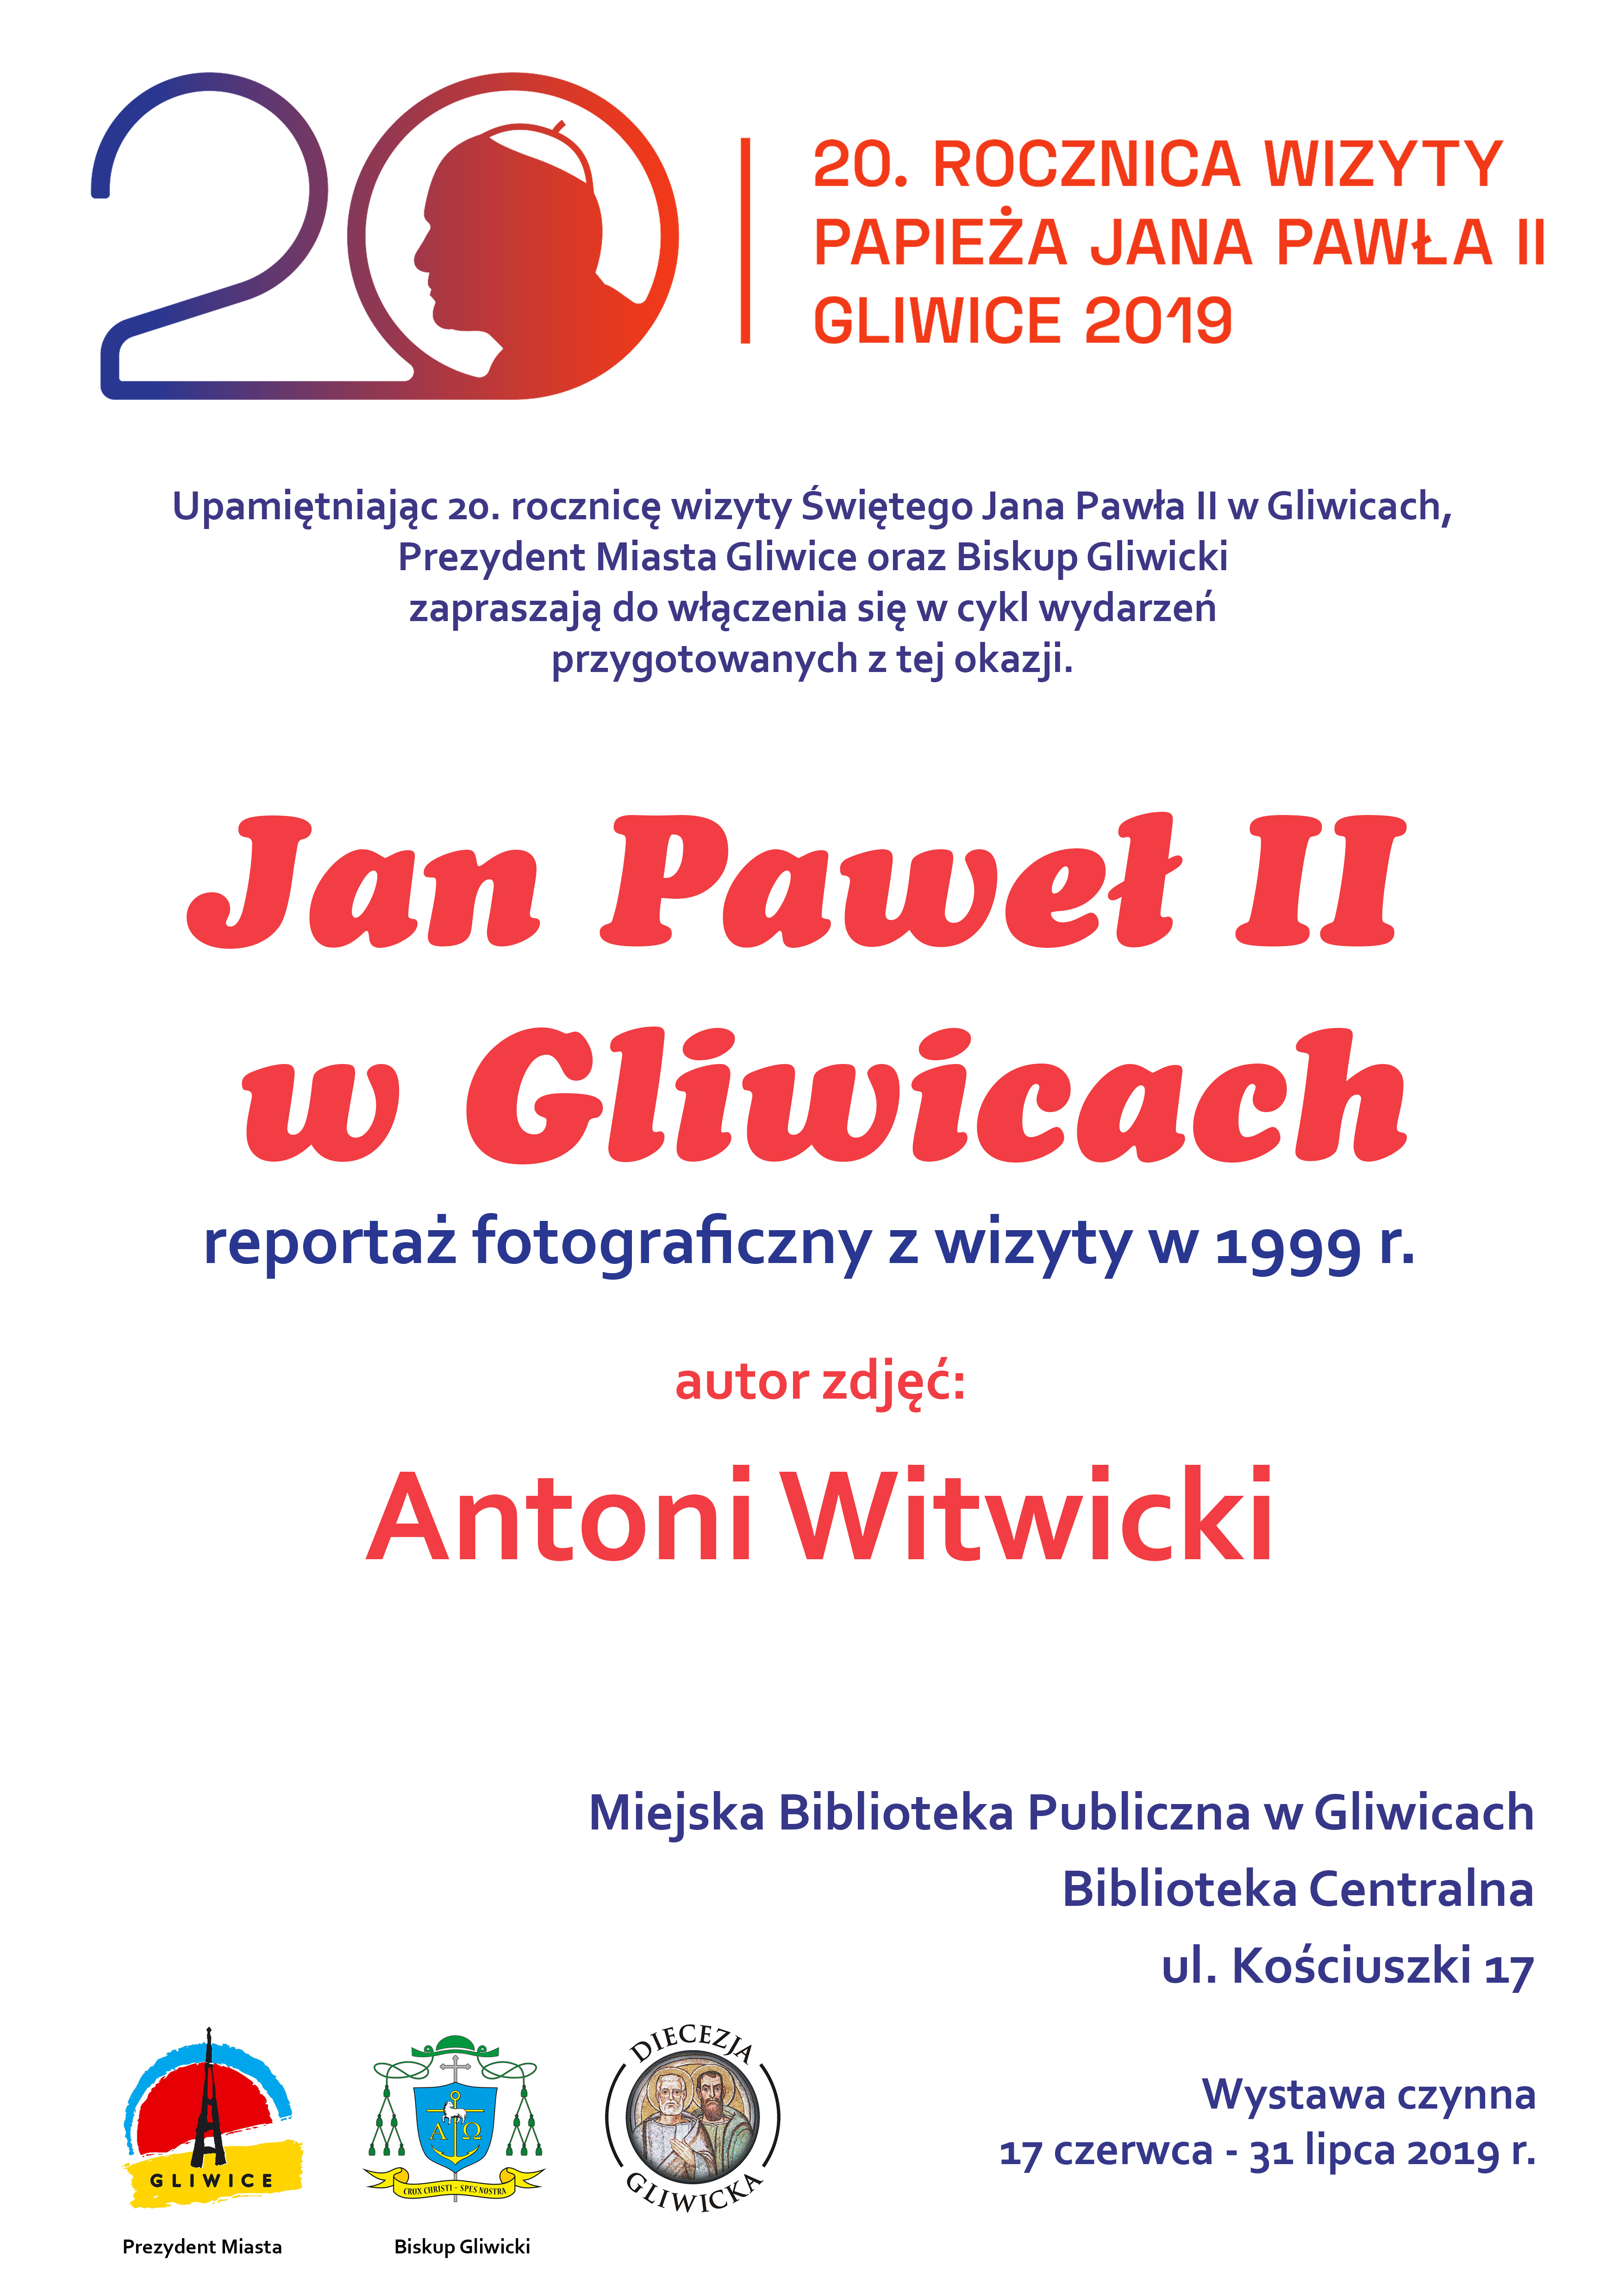 „Jan Paweł II w Gliwicach” Antoniego Witwickiego